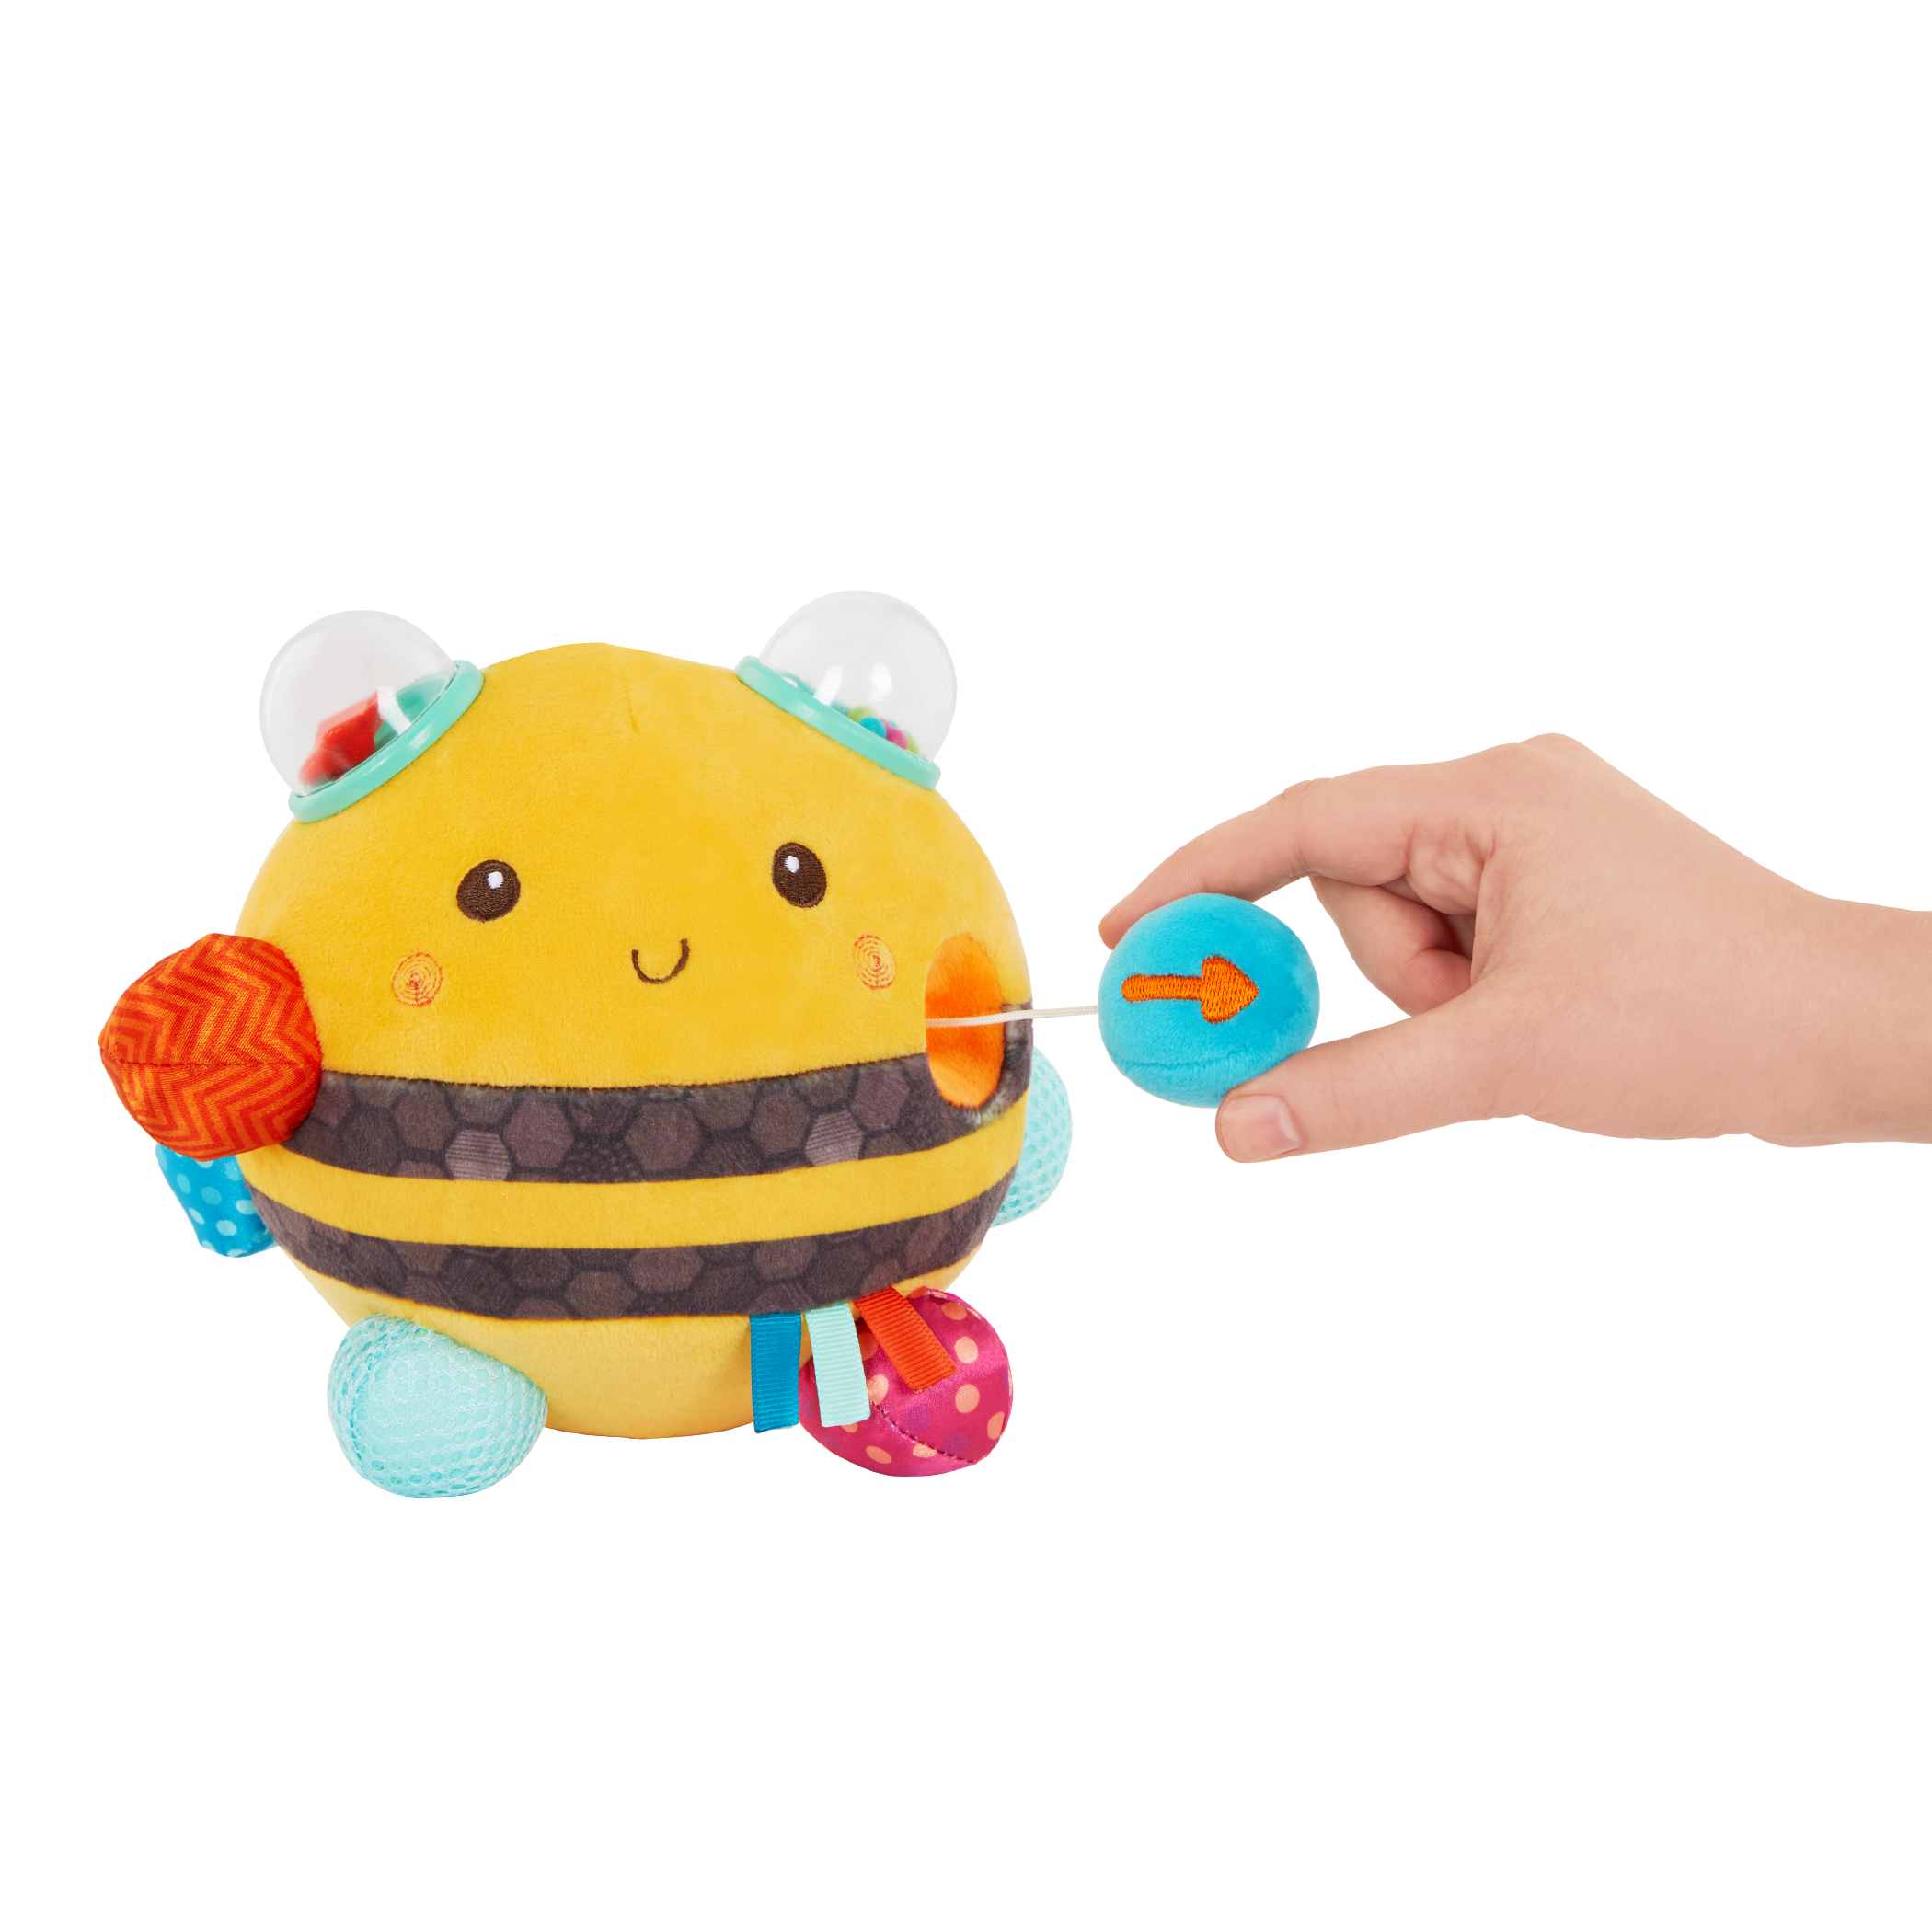 Fuzzy Buzzy Bee, Sensory Plush Toy